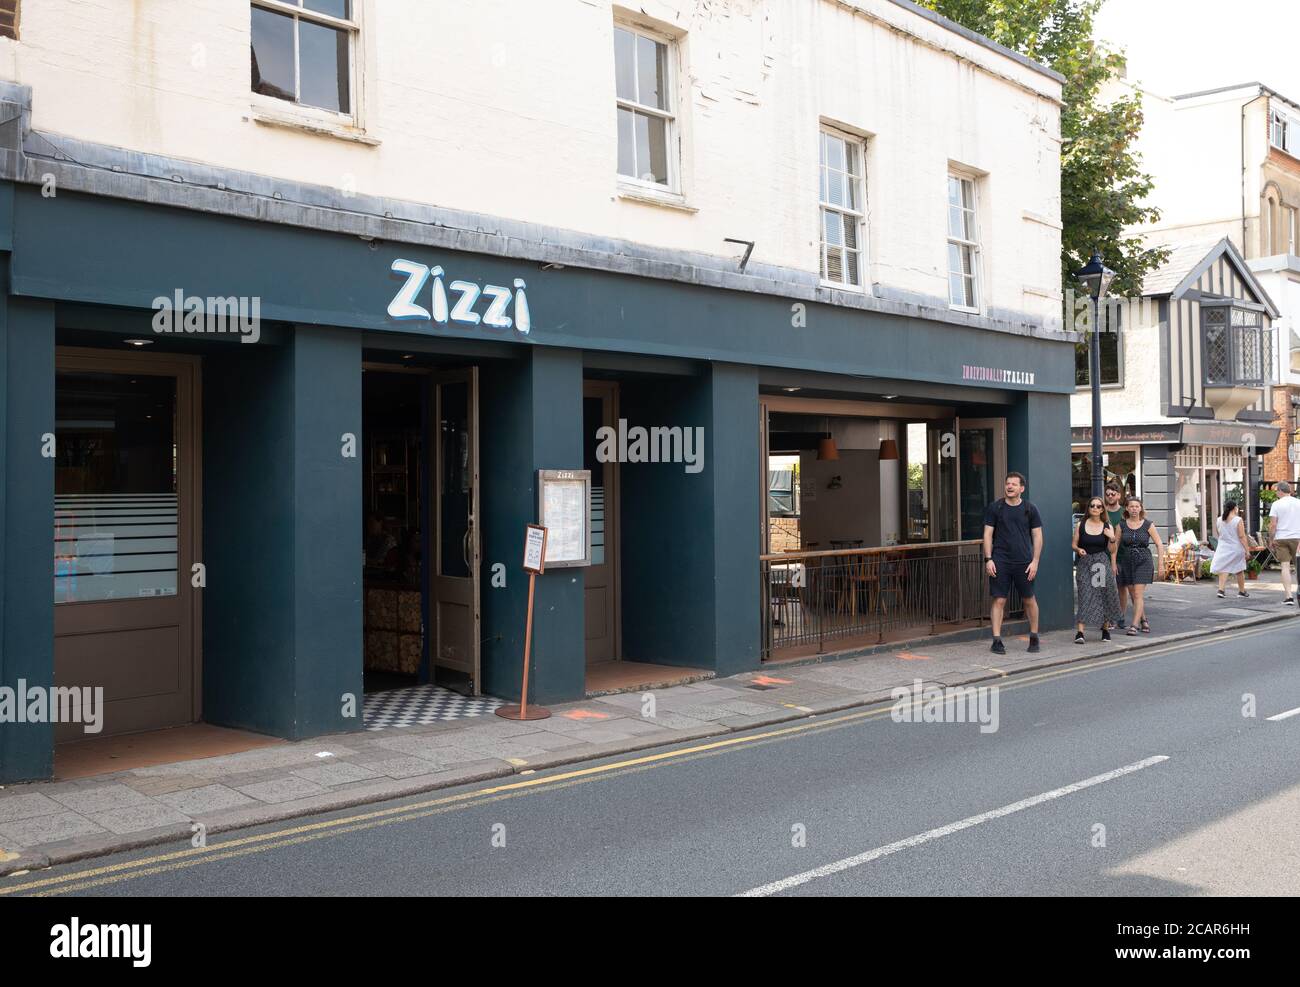 Zizzi restaurant in Sevenoaks town centre, Kent Stock Photo